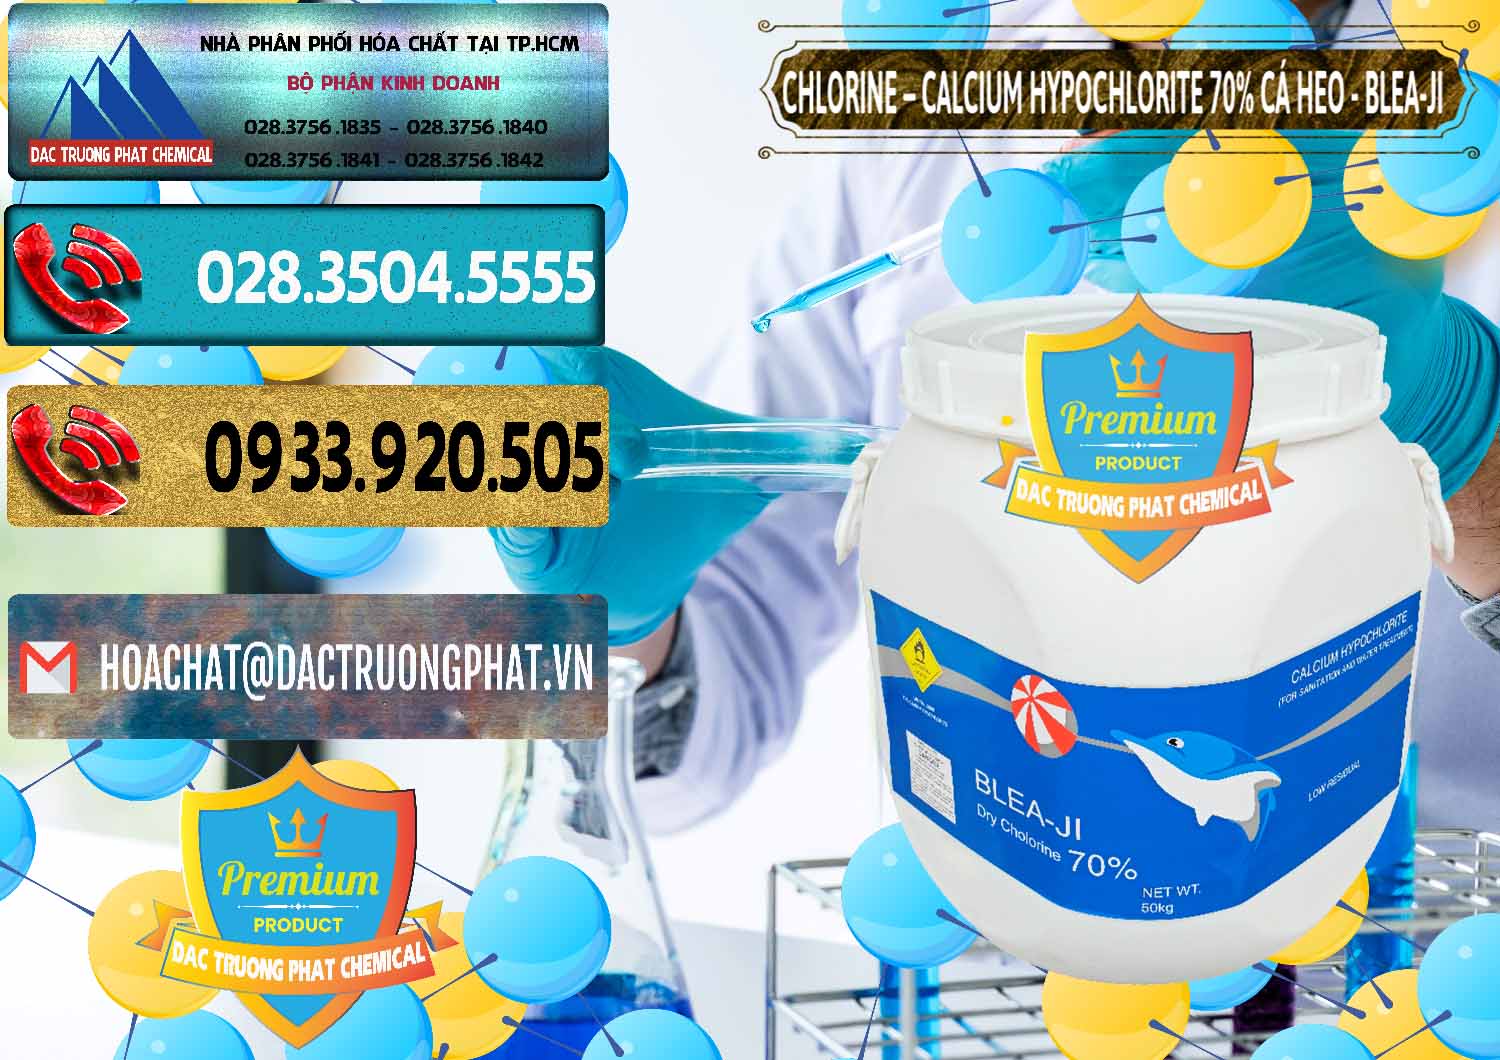 Đơn vị nhập khẩu và bán Clorin - Chlorine Cá Heo 70% Blea-Ji Trung Quốc China - 0056 - Công ty chuyên nhập khẩu & cung cấp hóa chất tại TP.HCM - hoachatdetnhuom.com